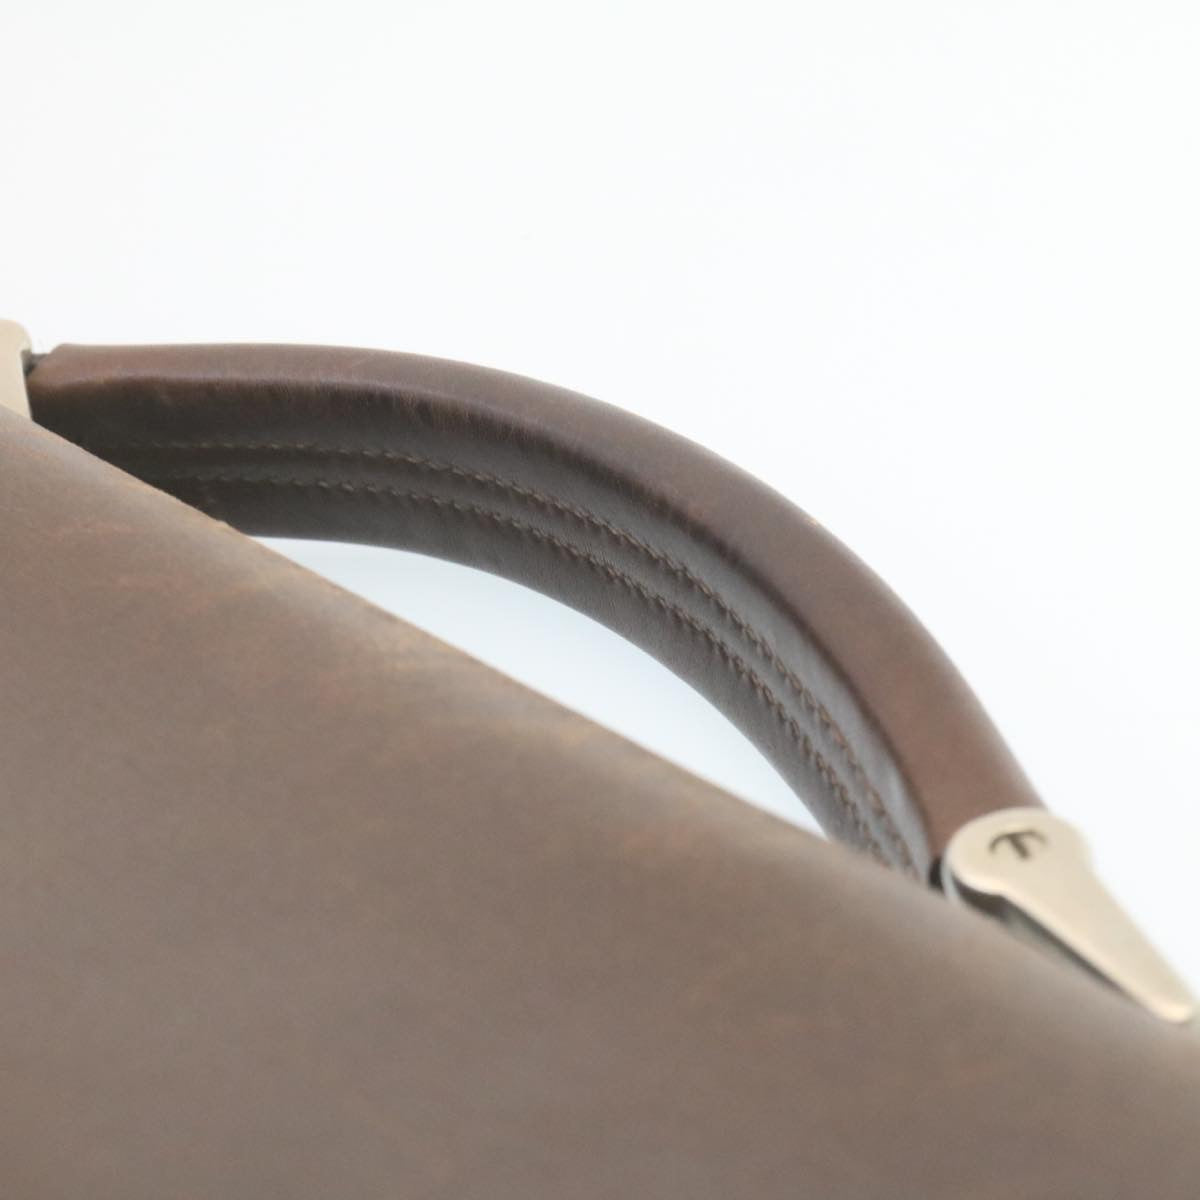 PRADA Leather Hand Bag Brown Auth ar6360